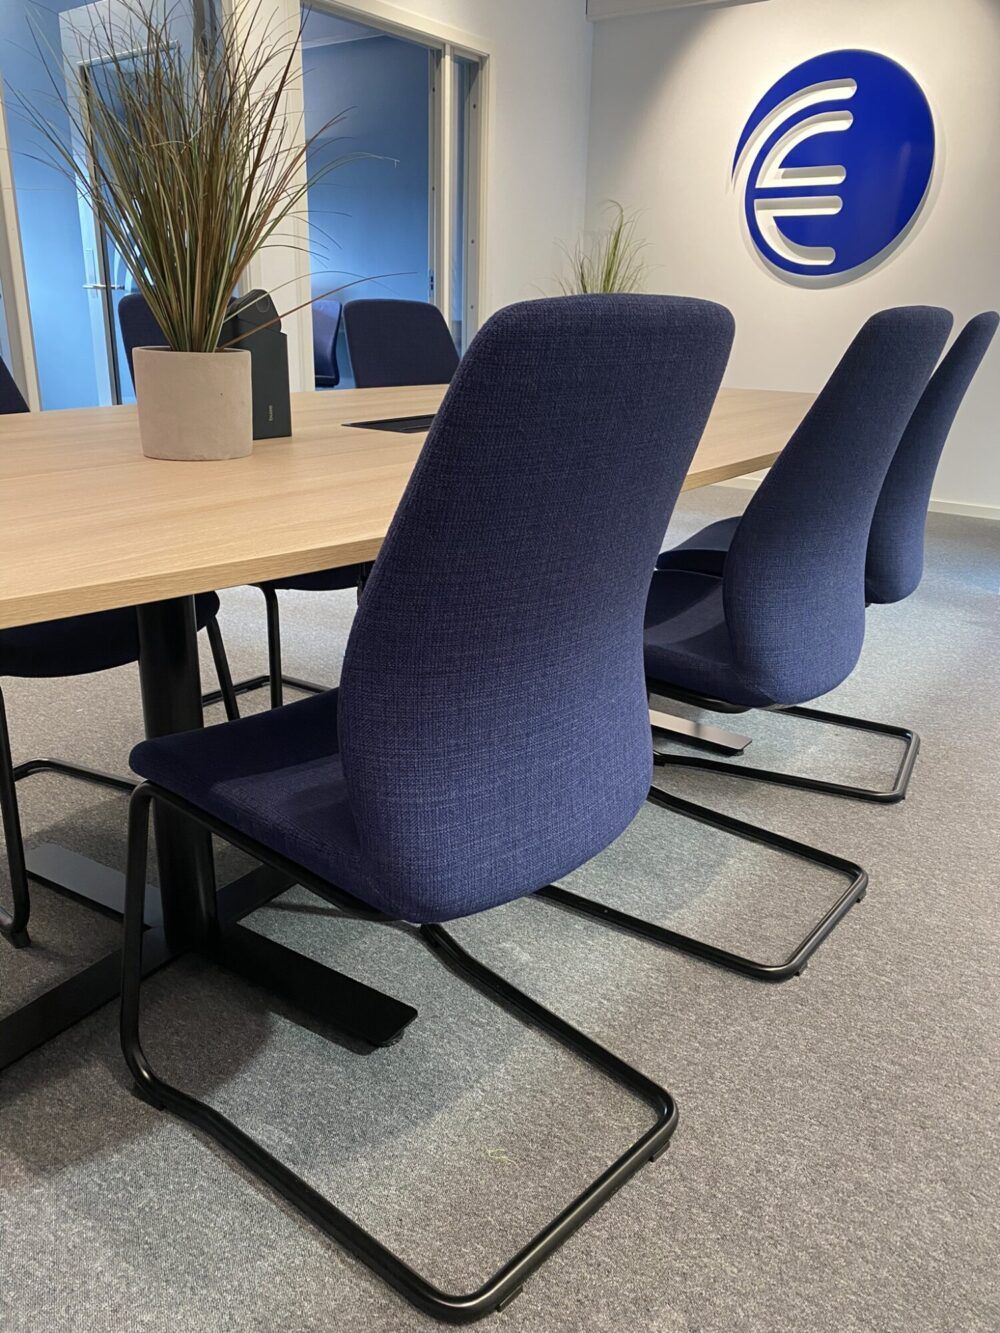 Blå møteromsstoler hos Enor Verdal. Møteromsbord med topplate i laminat eik.